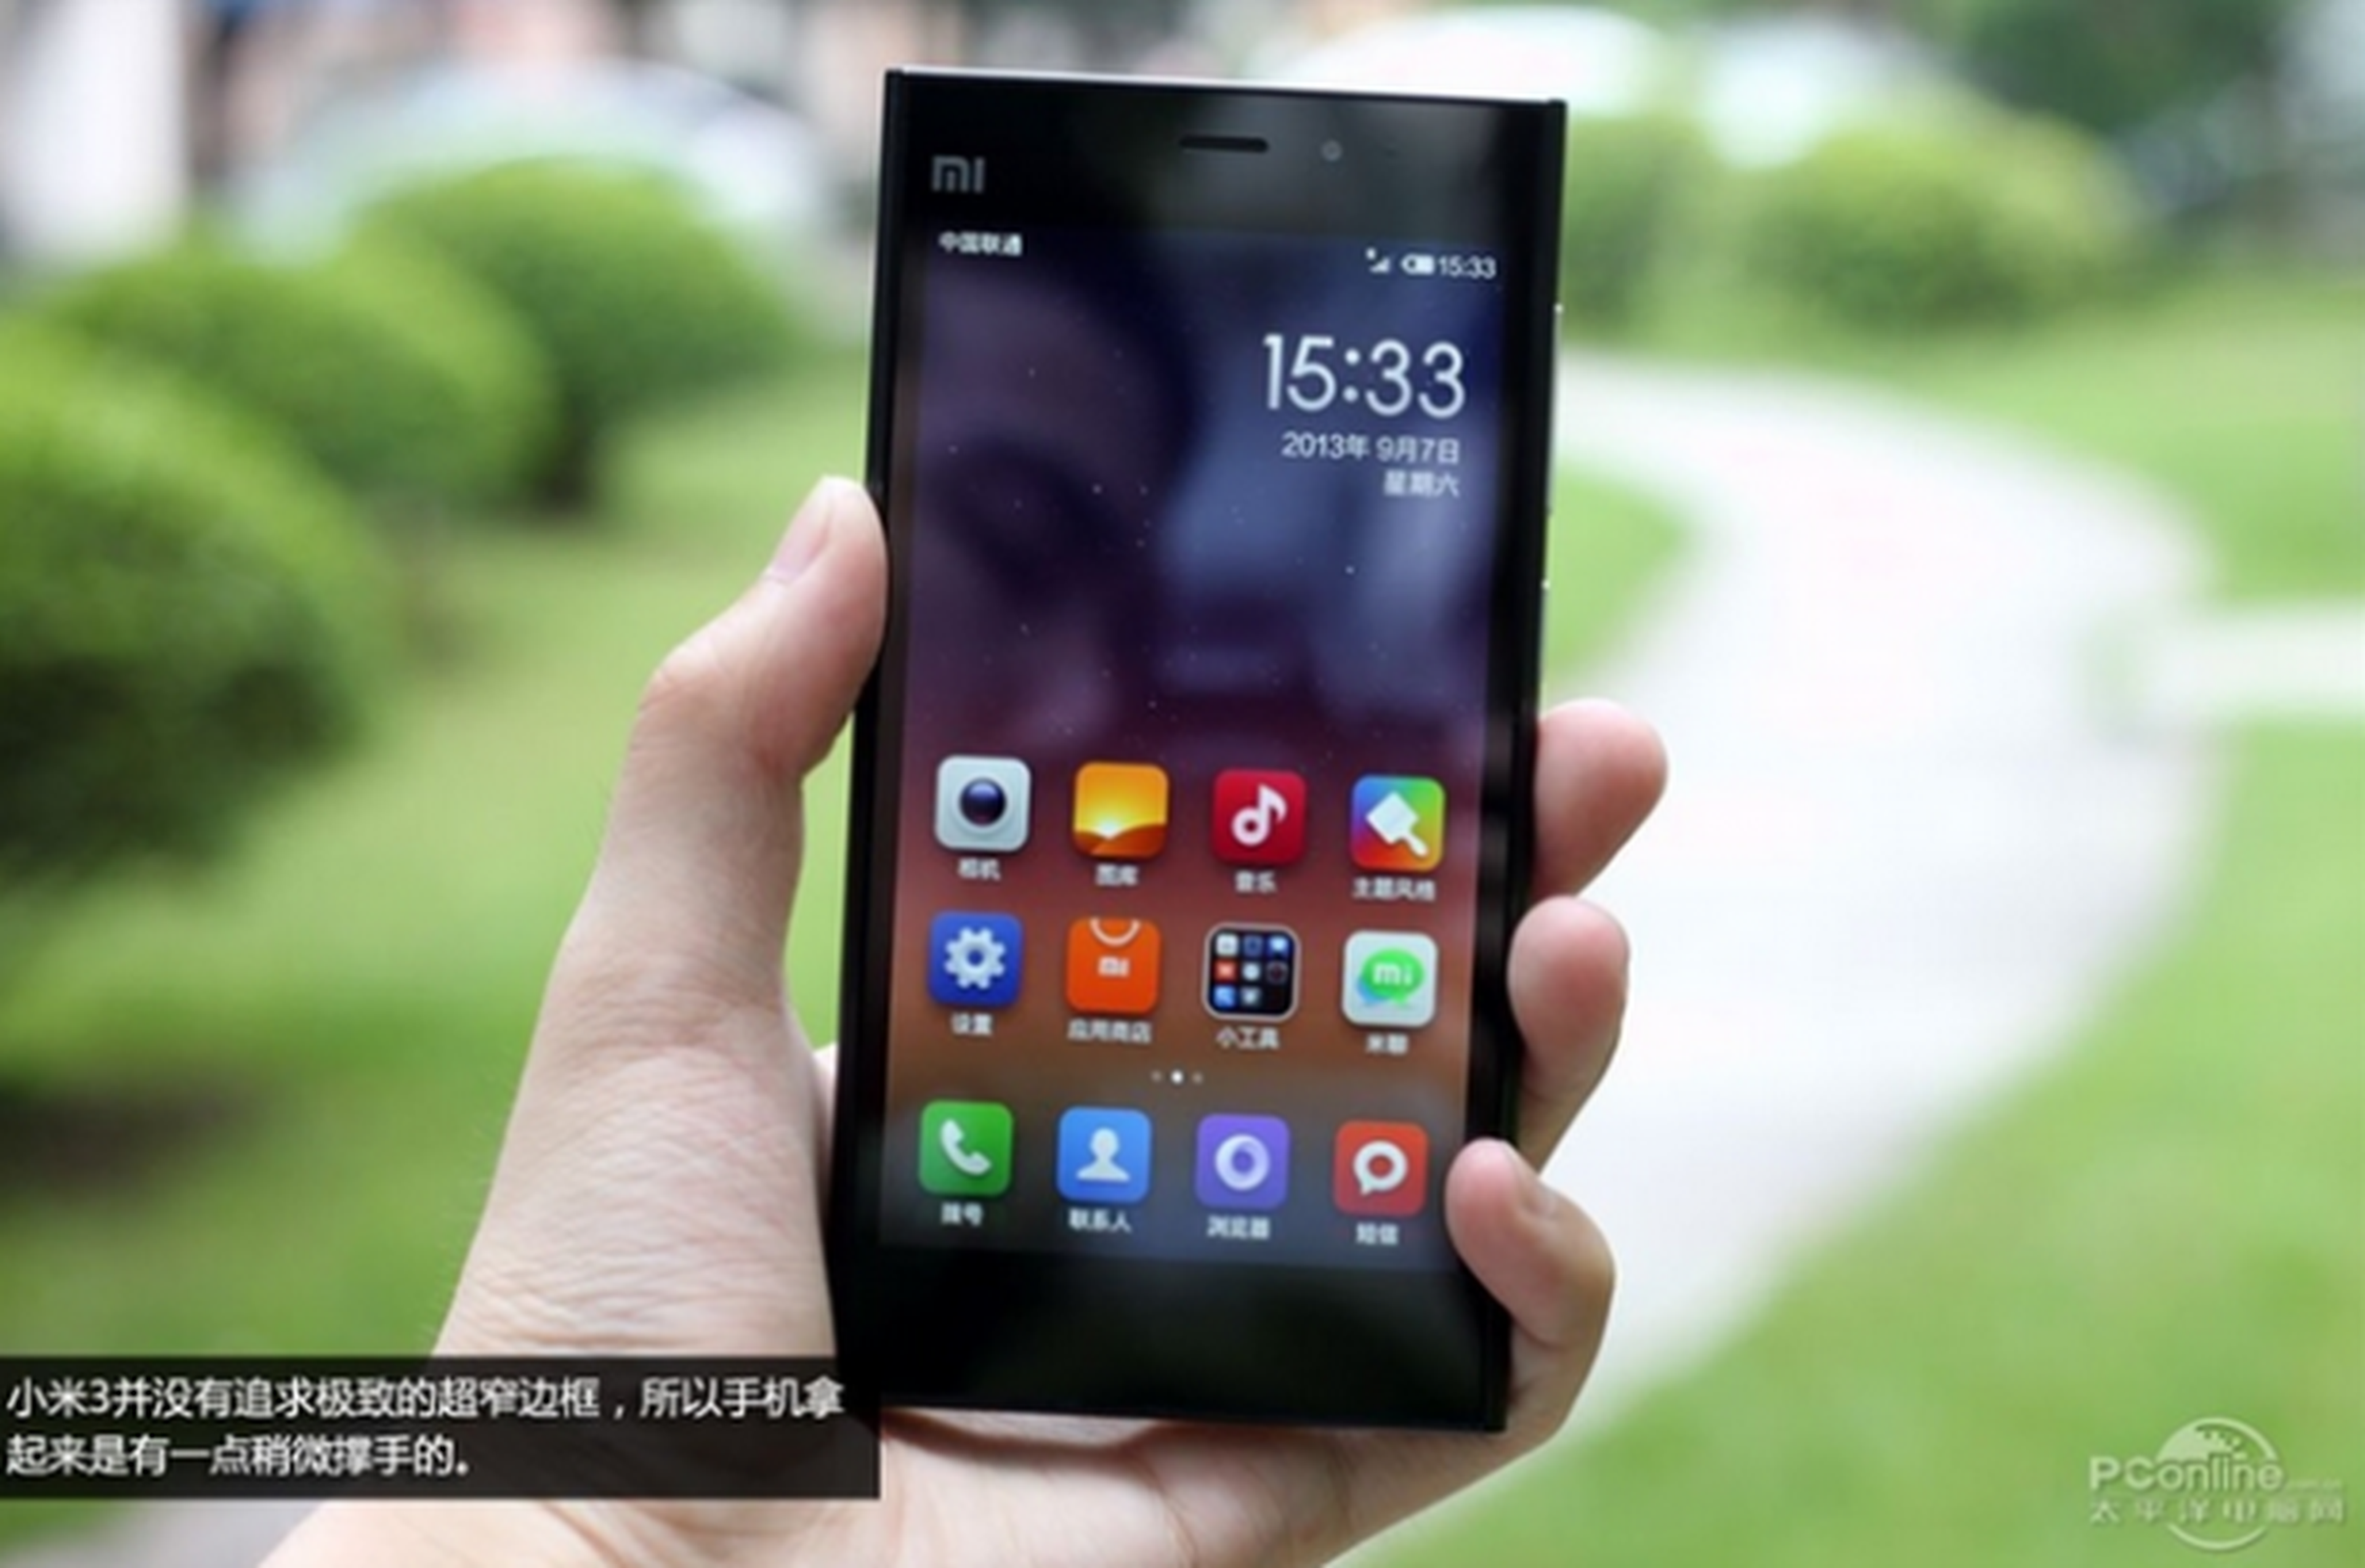 Xiaomi Mi3S preparado para competir con el Samsung Galaxy S5